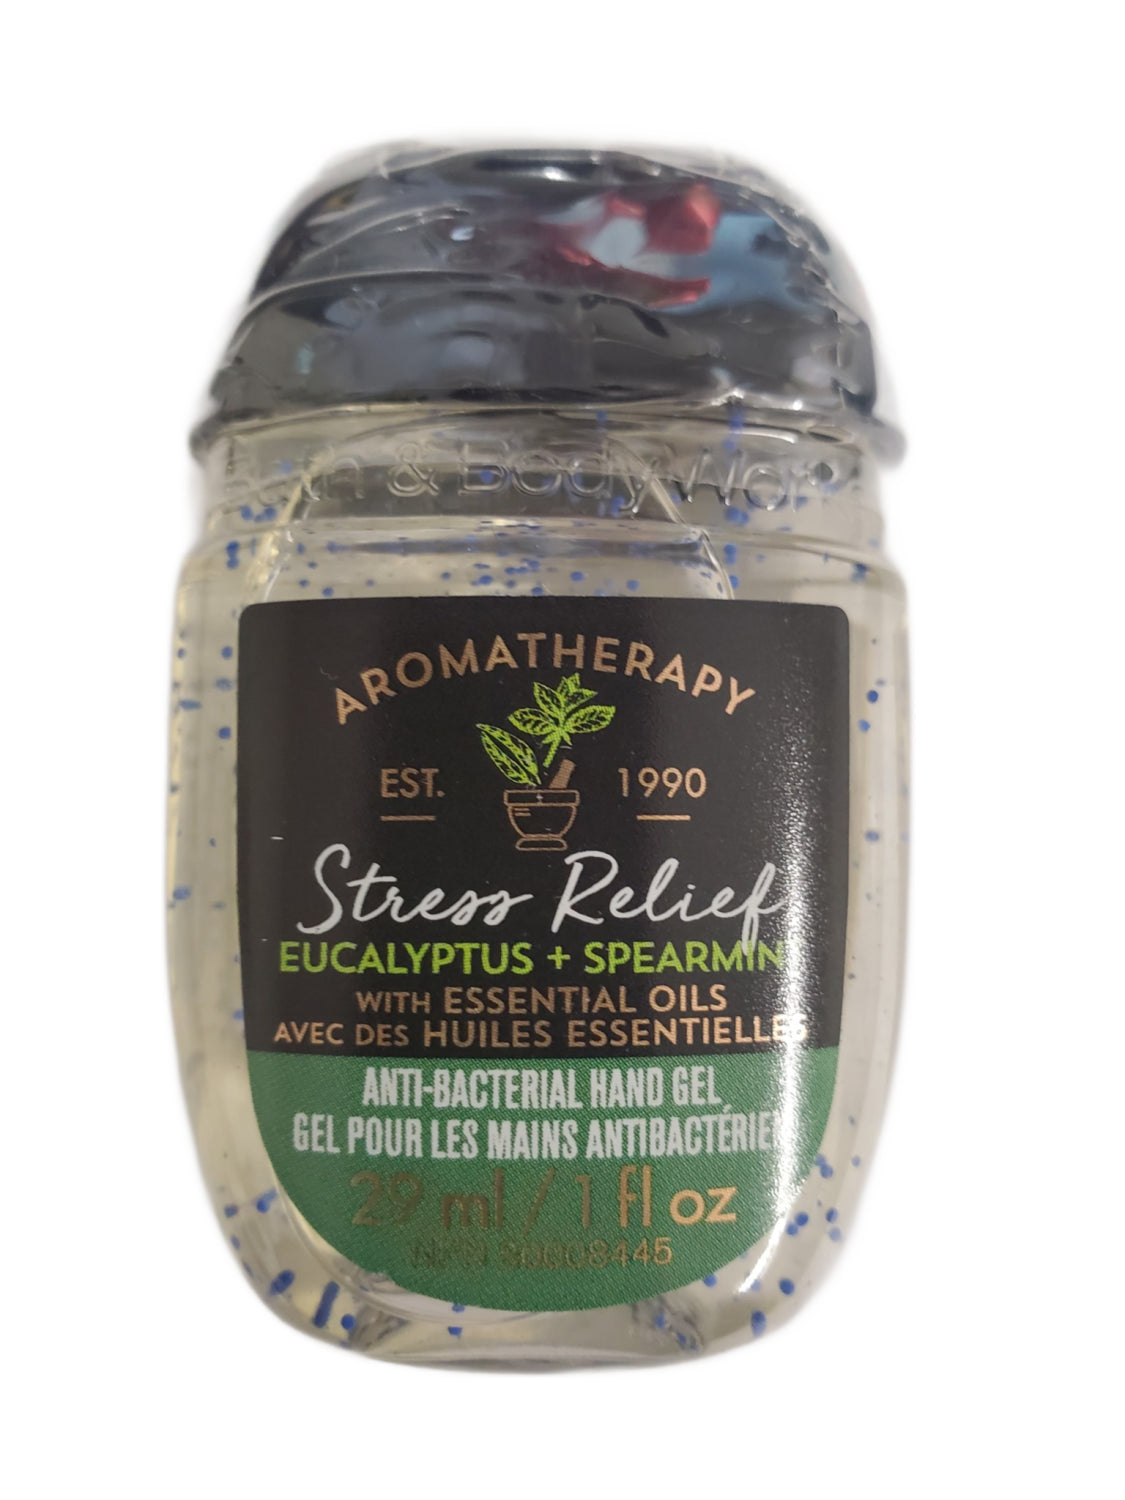 Bath & Body Works Aromatherapy Stress Relief  Anti Bacterial Hand Gel Eucalyptus Spearmint 1oz EXPIRED